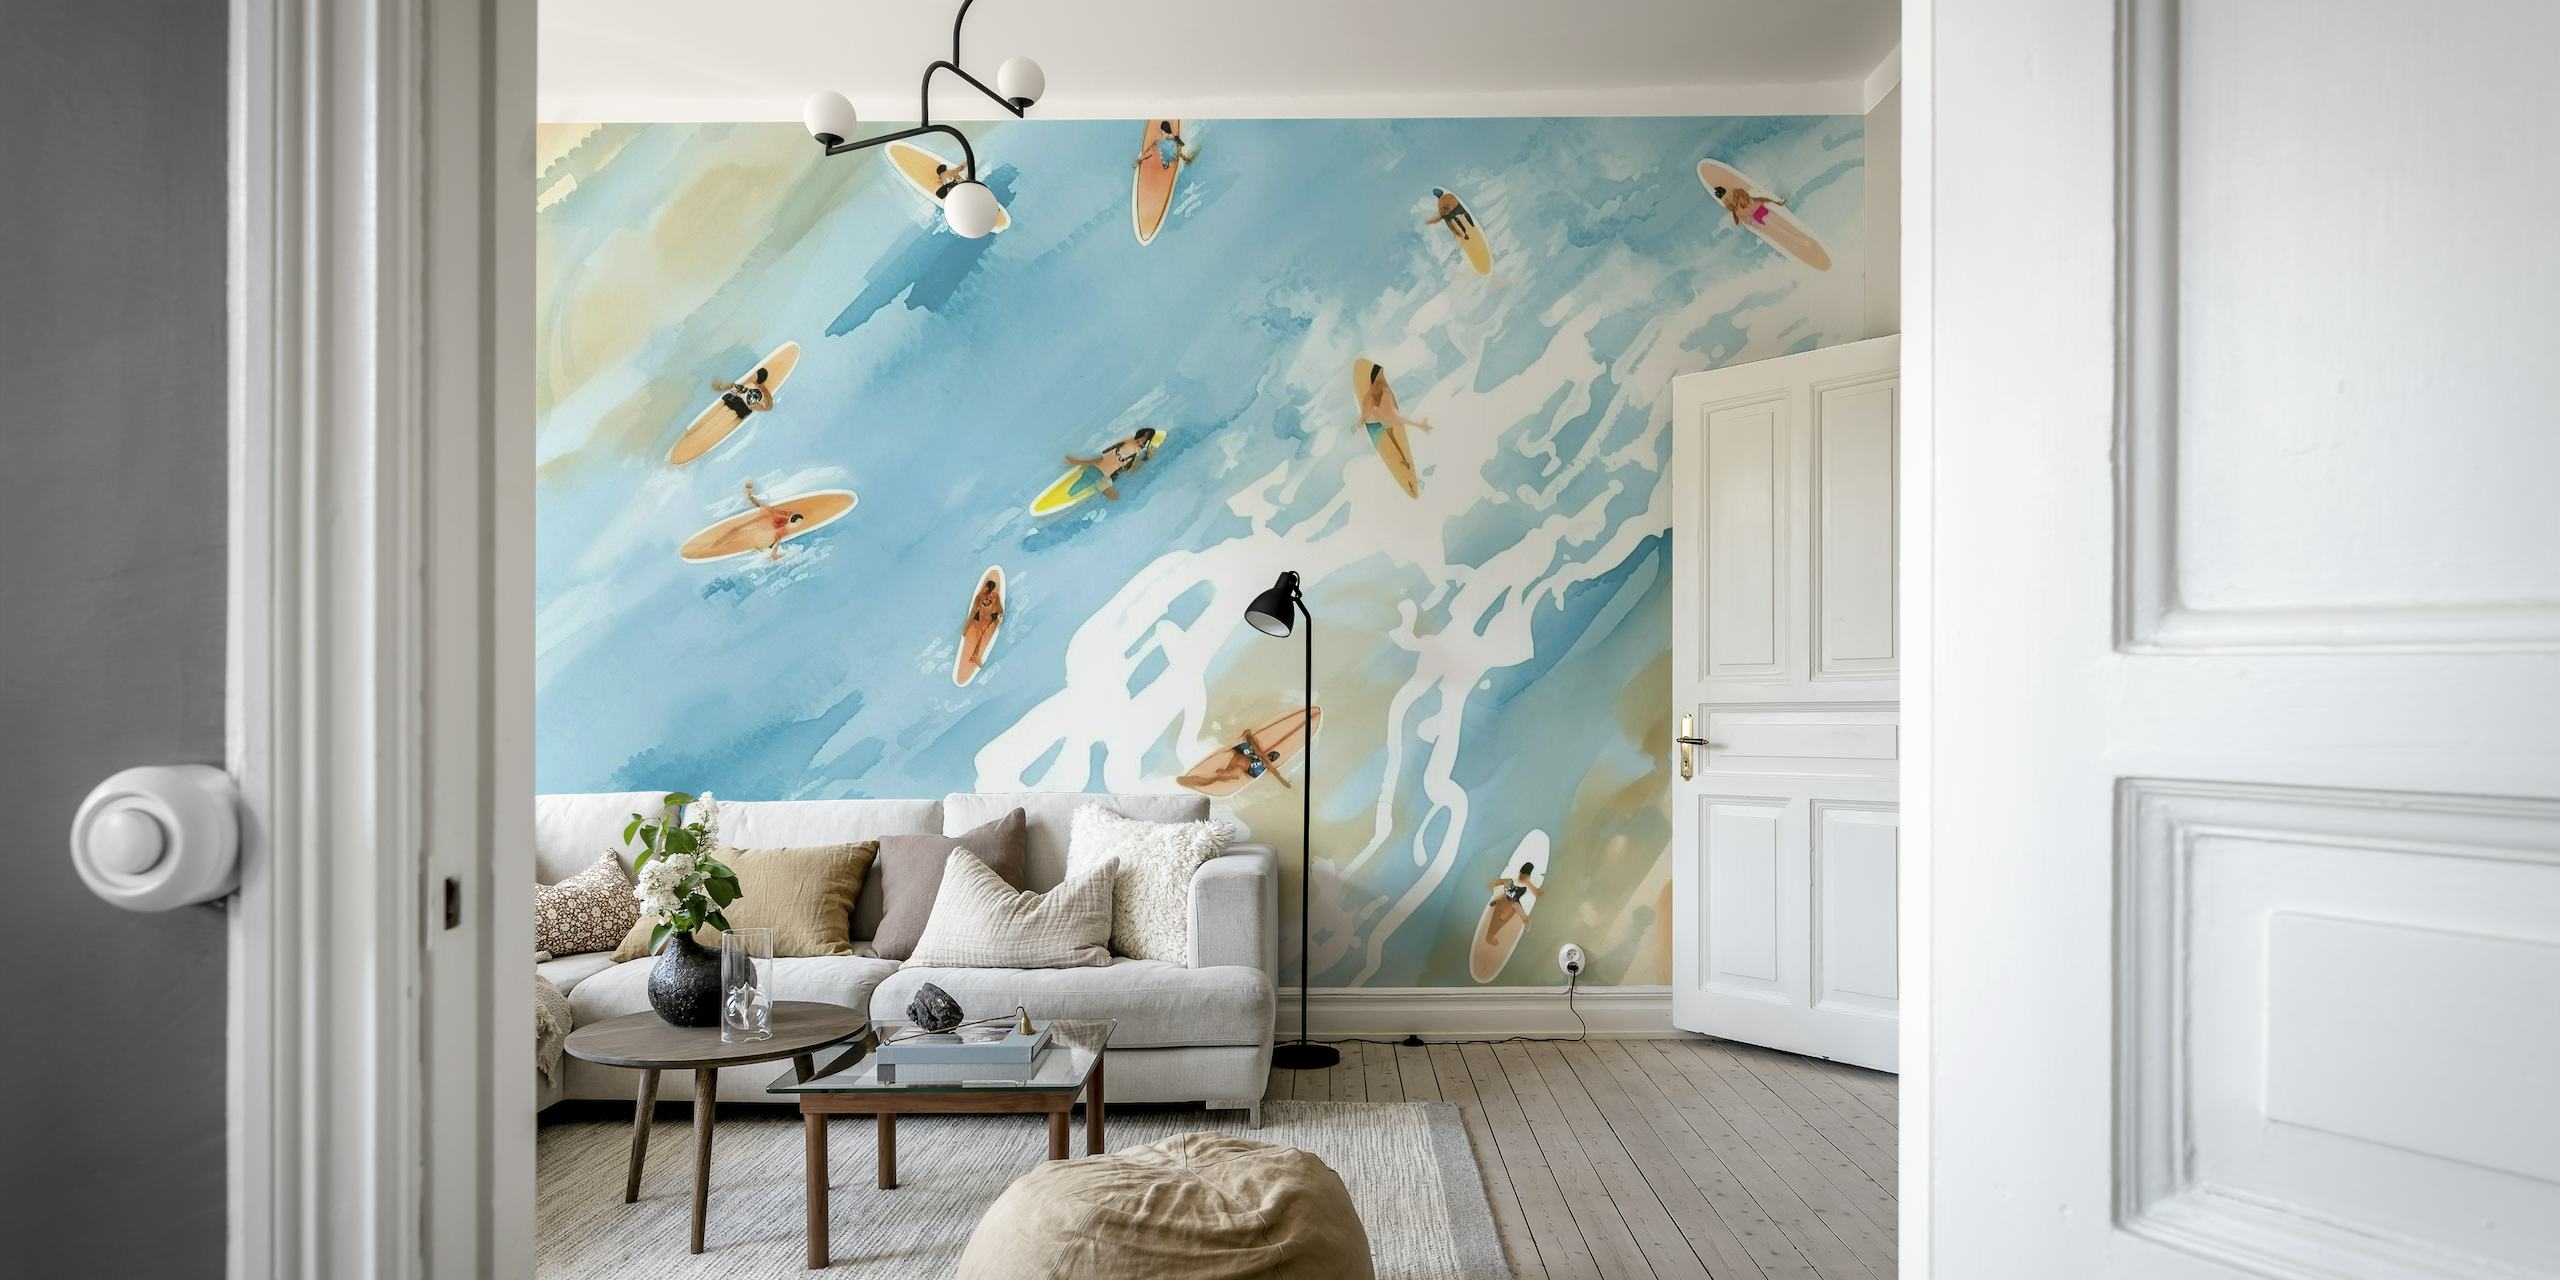 Surffaajien seinämaalaus, jossa on ilmakuva henkilöistä, jotka surffaavat lempeillä aalloilla